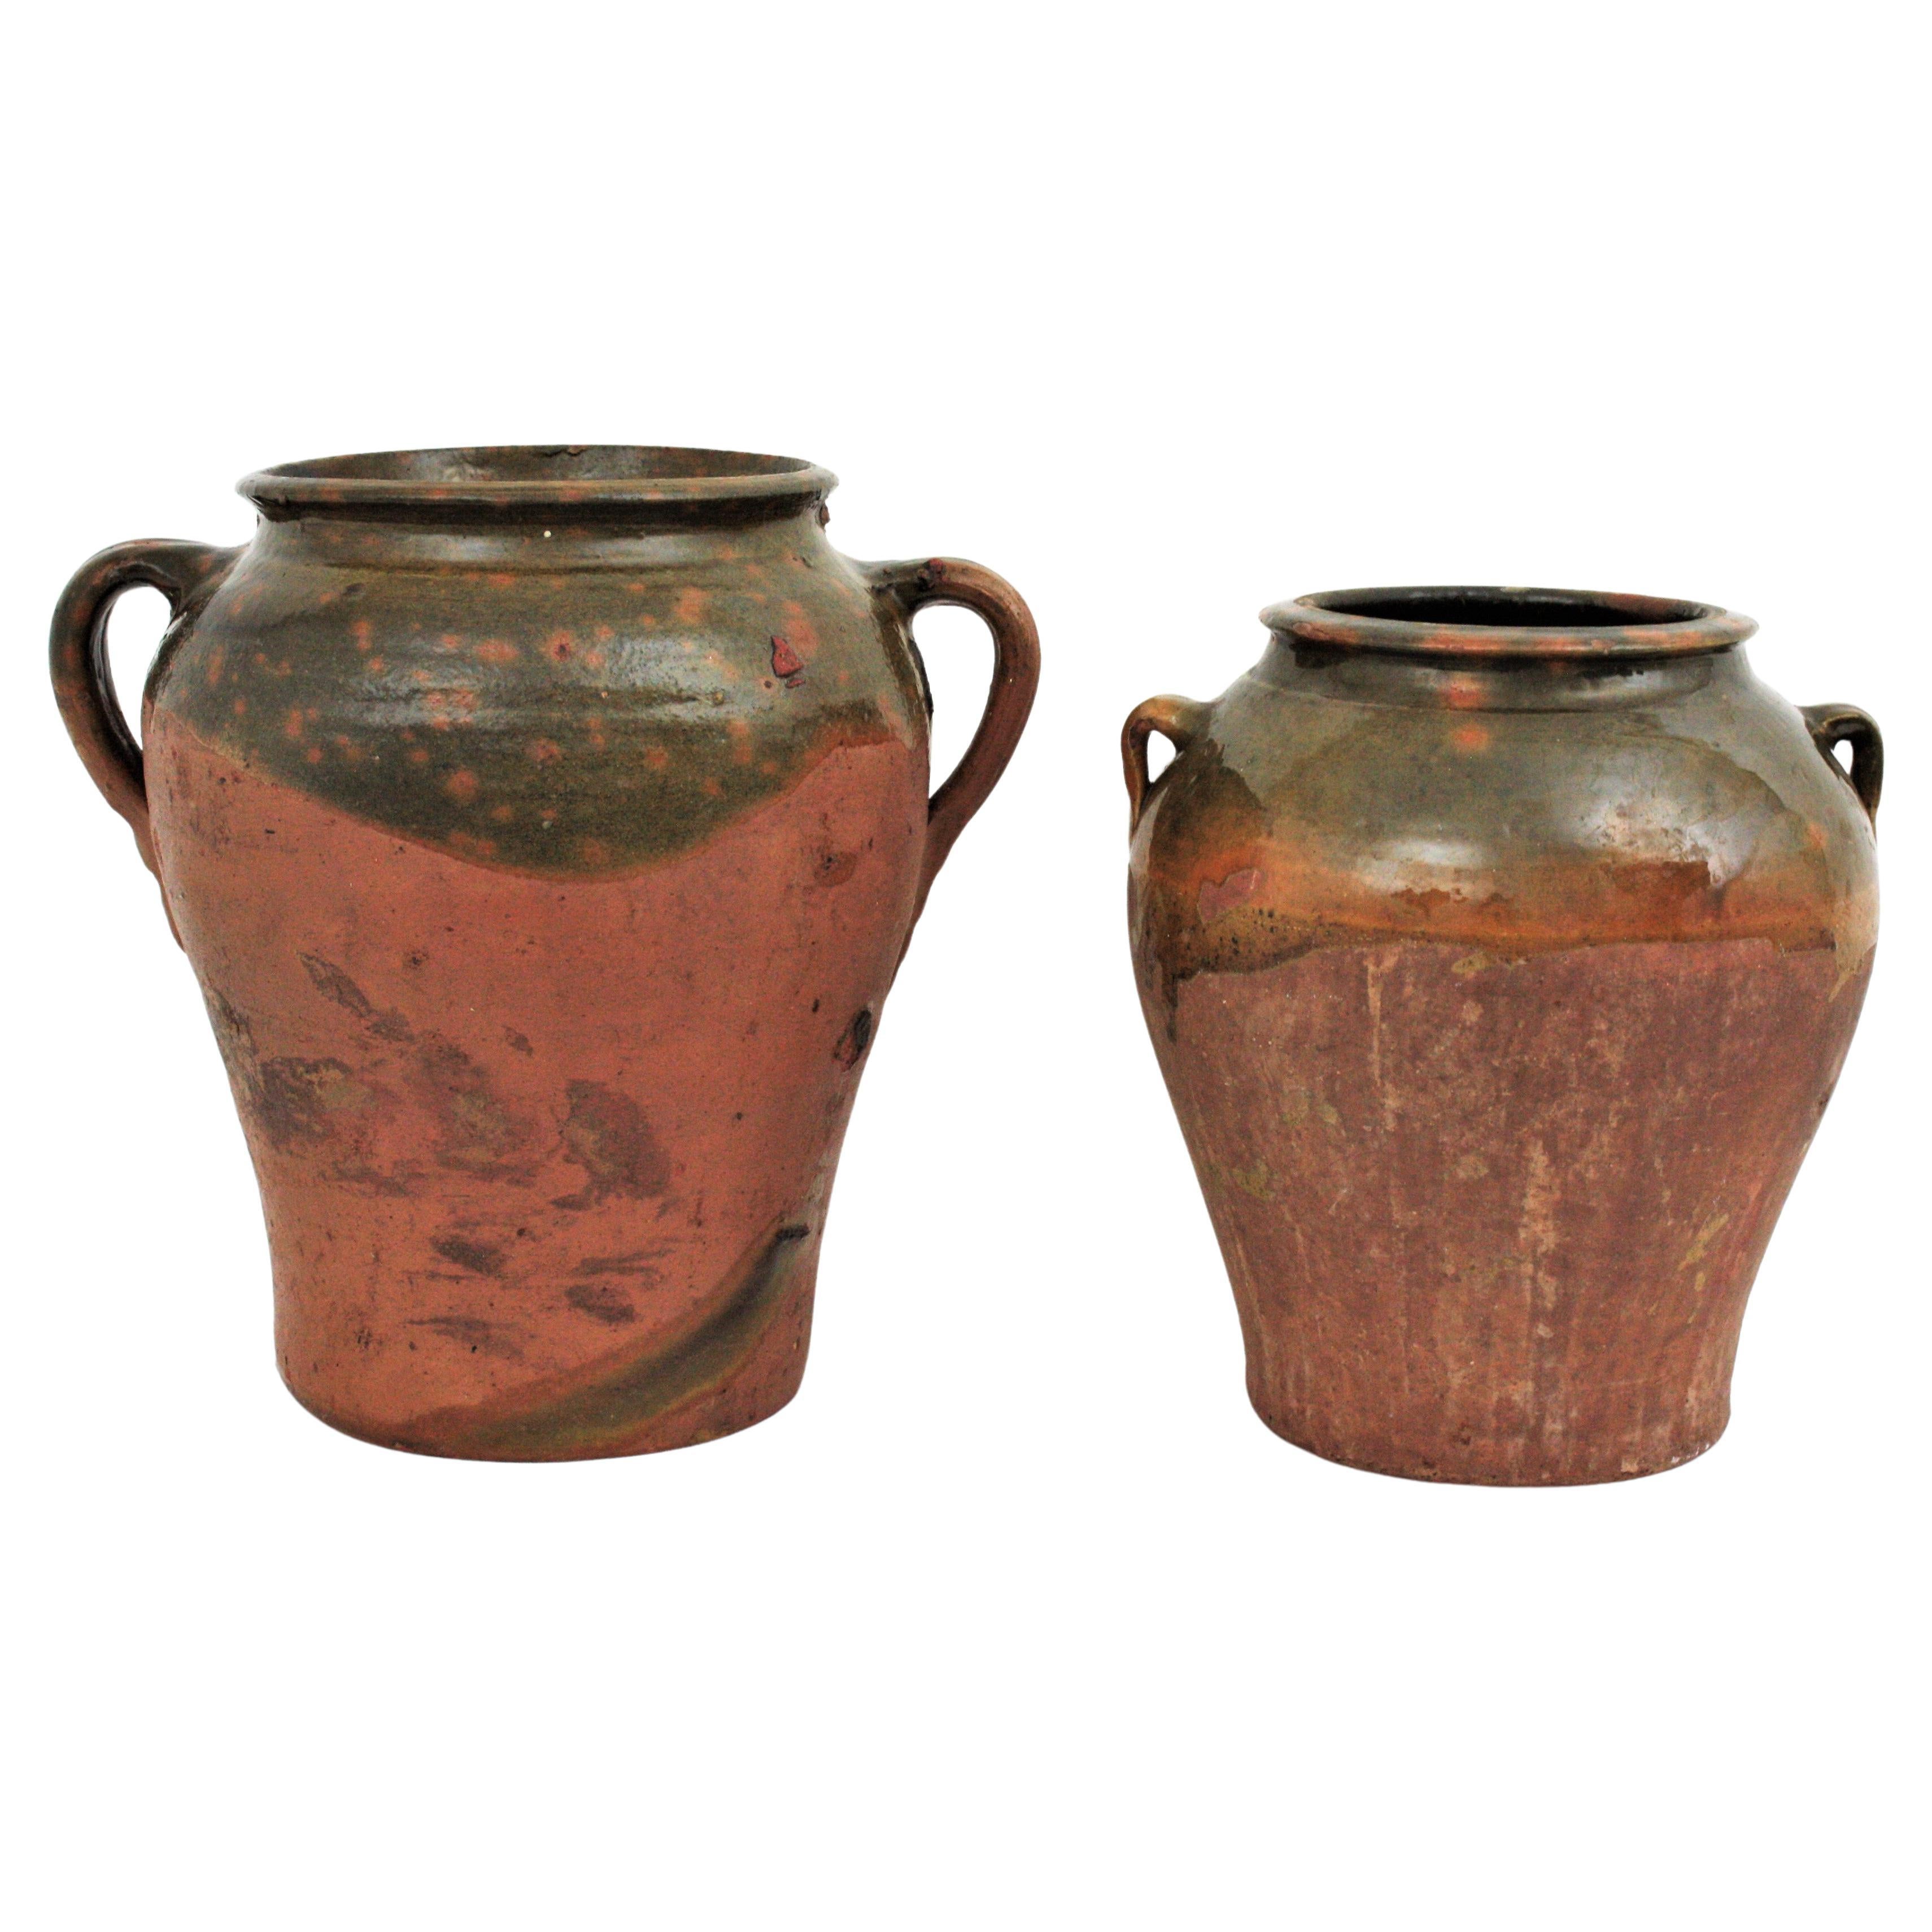 Pot ou jarre de conservation en terre cuite fait à la main avec des poignées, Segovia, Espagne, années 1930
Deux 